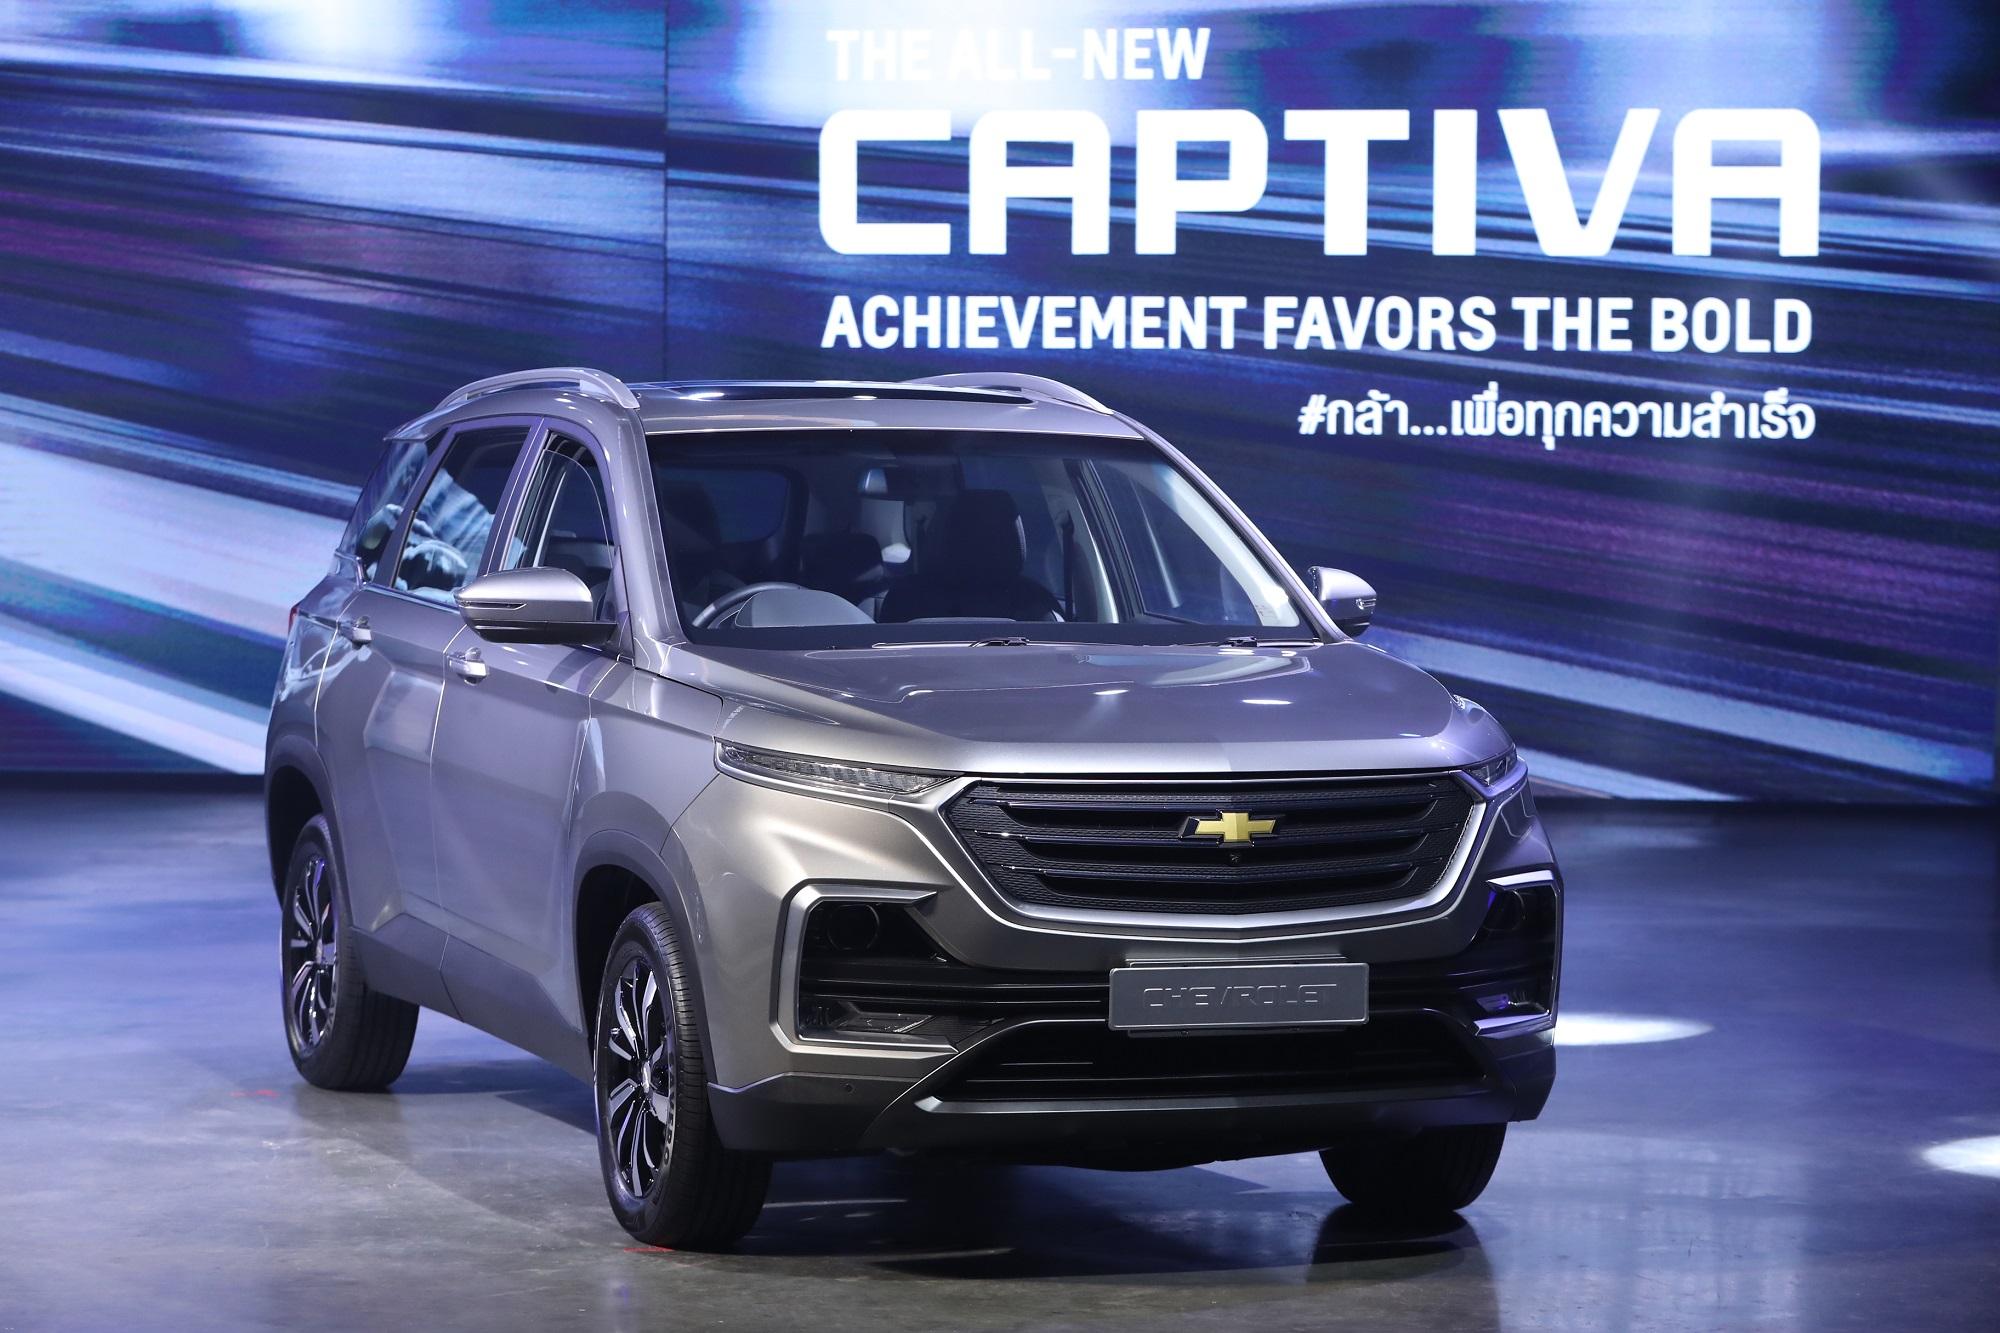 ส่องราคา All-new Chevrolet Captiva ทั้ง 3 รุ่น เริ่มต้นไม่ถึงล้านบาท